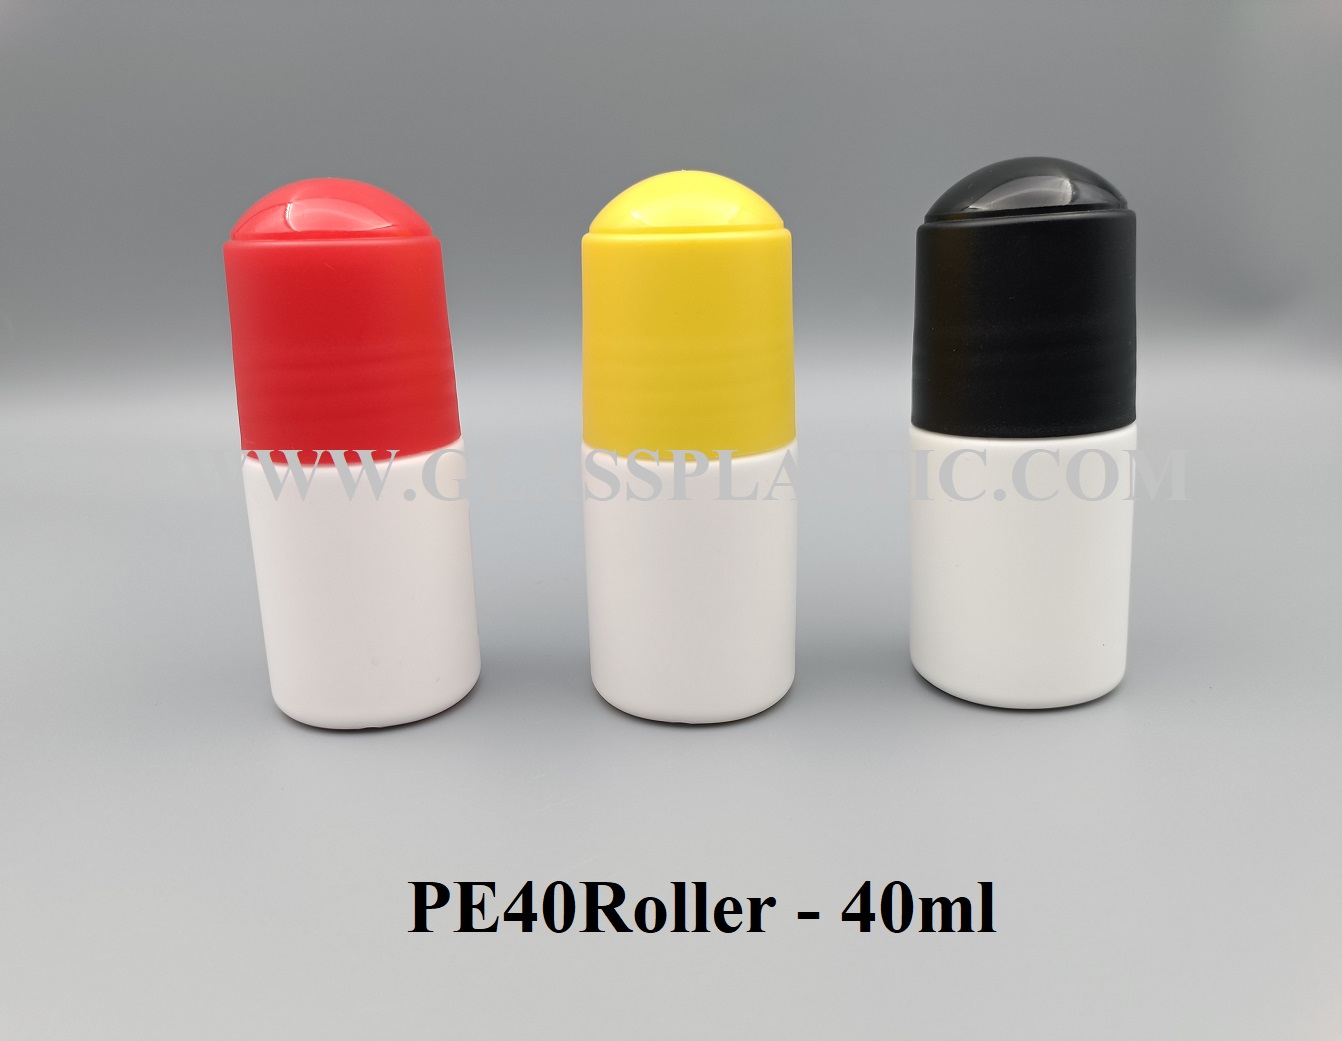 HDPE Roller Bottle: 40ml